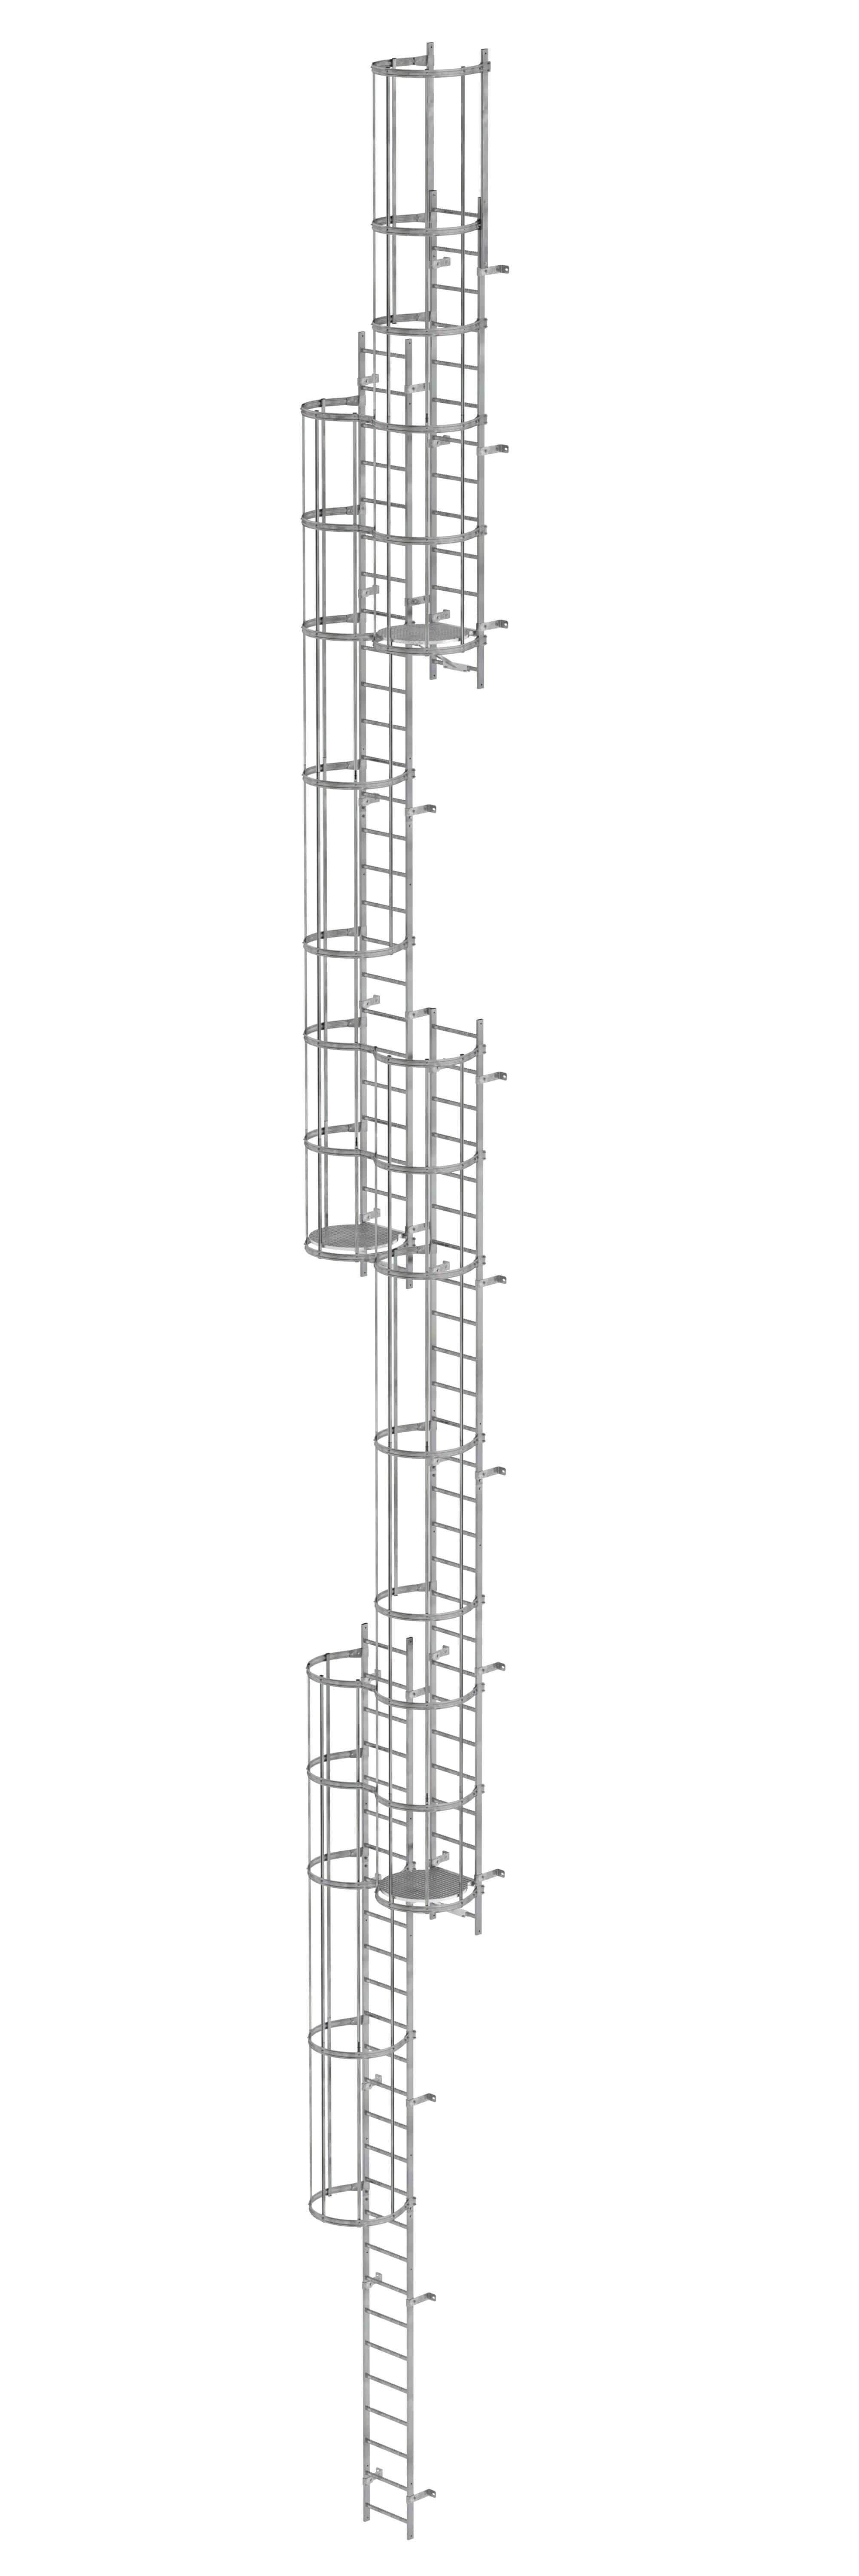 Munk Mehrzügige Steigleiter mit Rückenschutz (Notleiter) Stahl verzinkt 19,96m